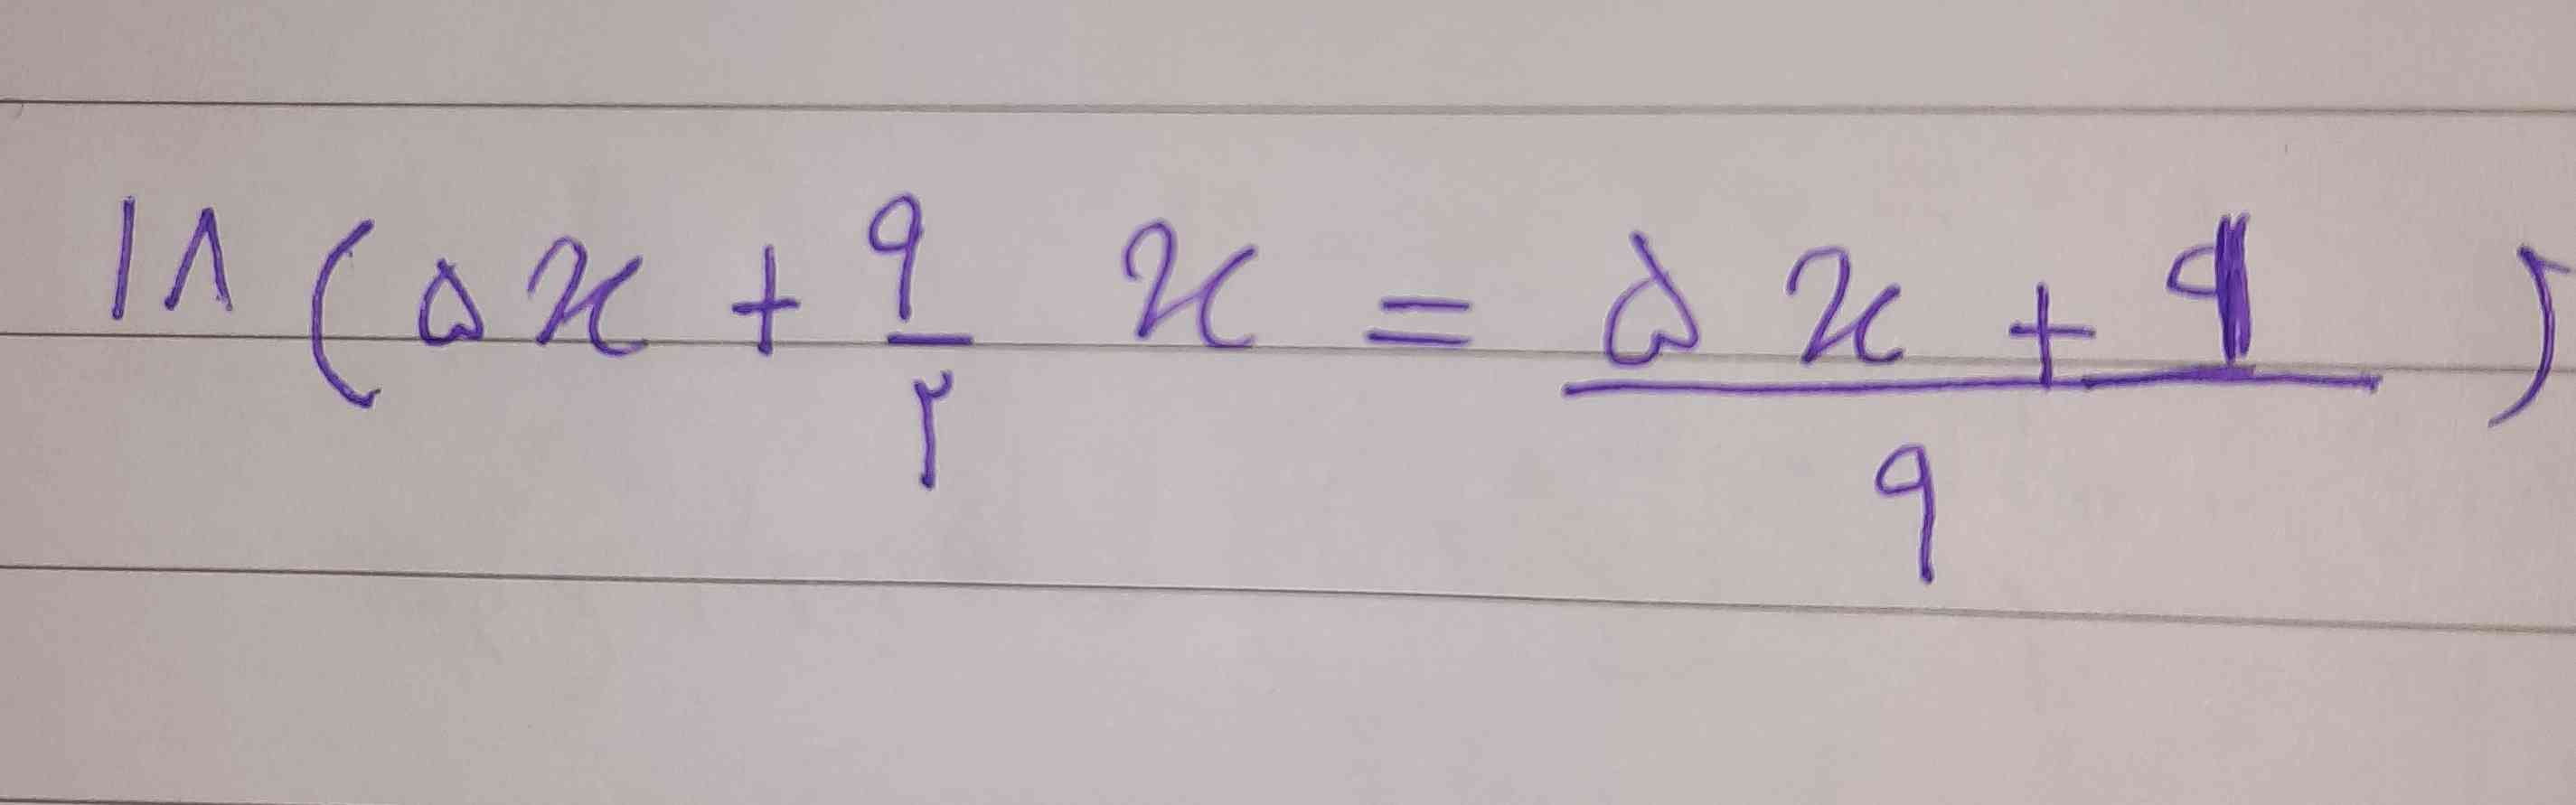 بچه ها کسی روش حل این معادله ها رو میدونه. 
میشه برام انجام بدین💜